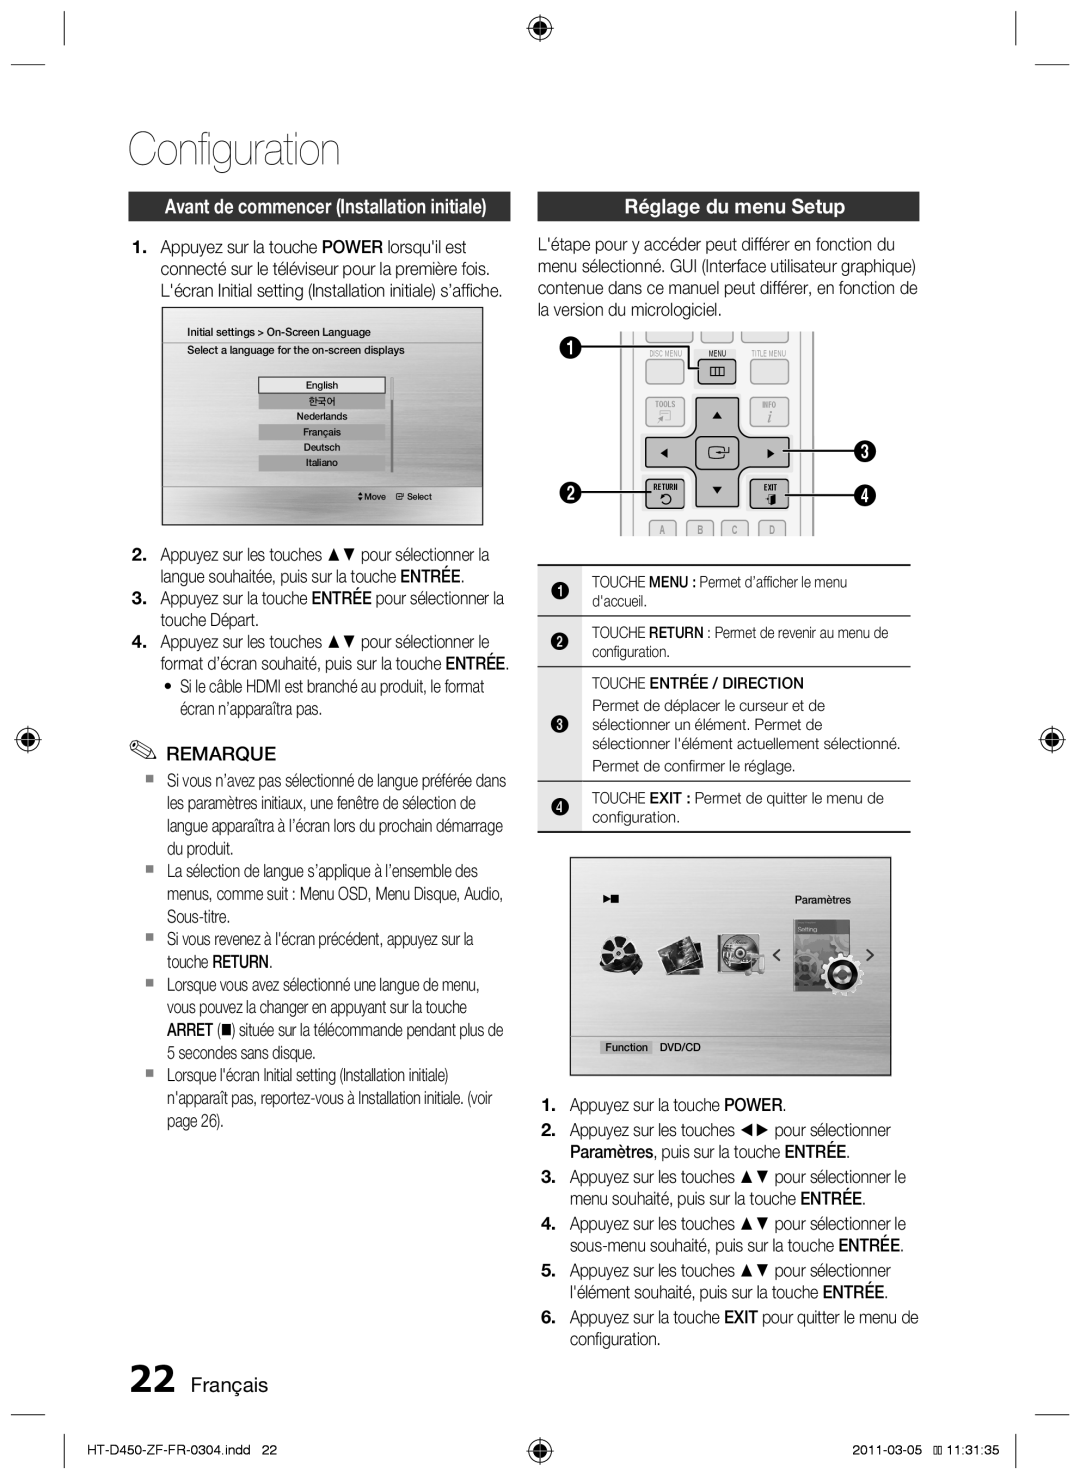 Samsung HT-D455, HT-D450, HT-D453 user manual Configuration, Français, Réglage du menu Setup, la version du micrologiciel 